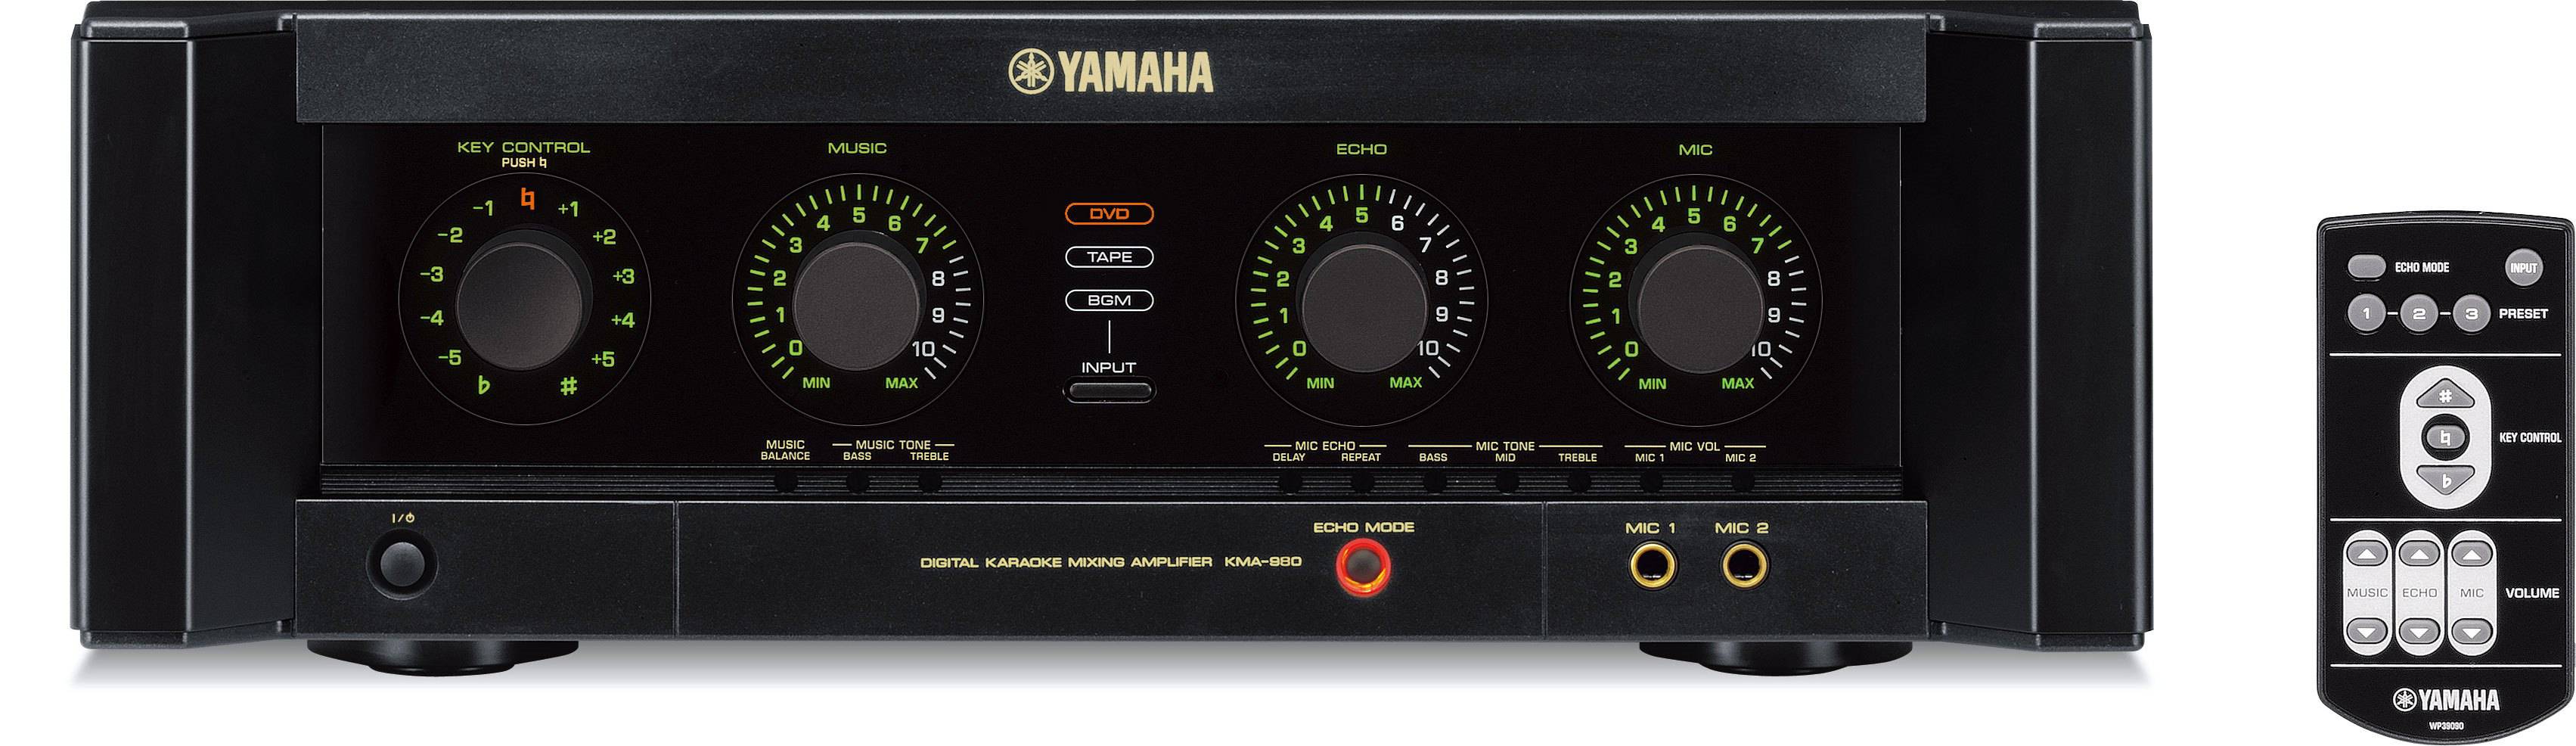 Yamaha KMA-980